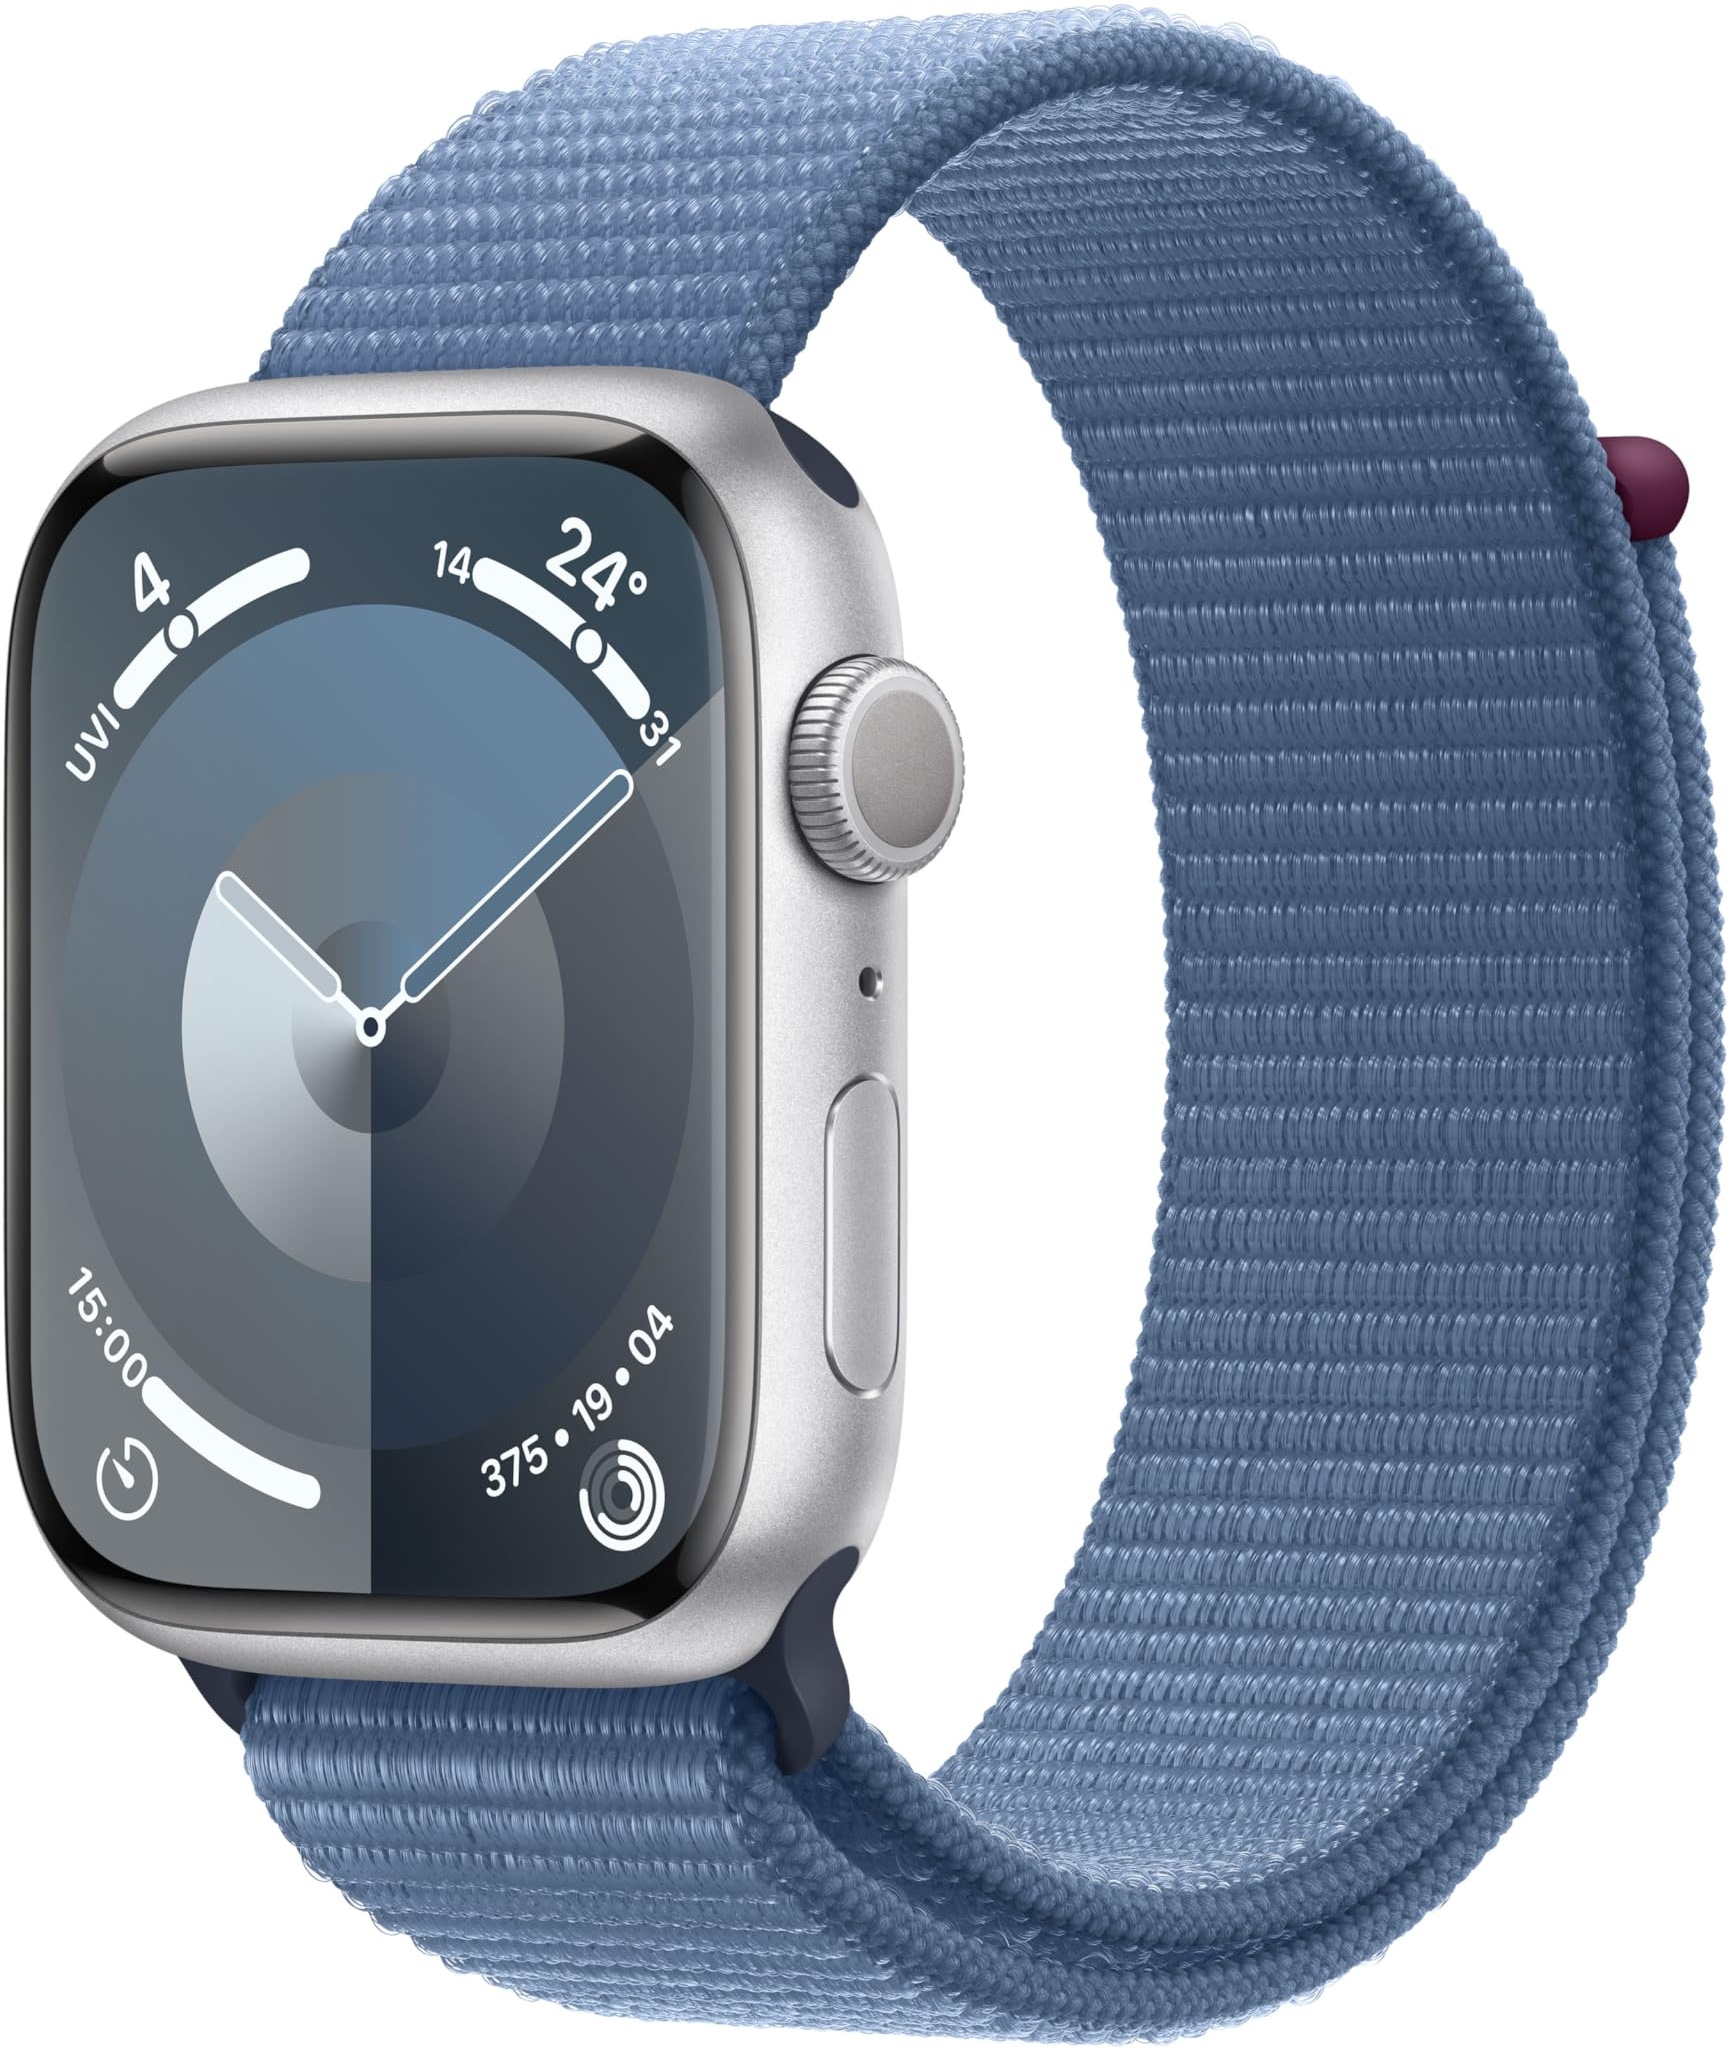 Apple Watch Series 9 (GPS, 45 mm) Smartwatch mit Aluminiumgehäuse in Silber und Sport Loop Armband in Winterblau. Fitnesstracker, Blutsauerstoff und EKG Apps, Always-On Retina Display, CO2 neutral